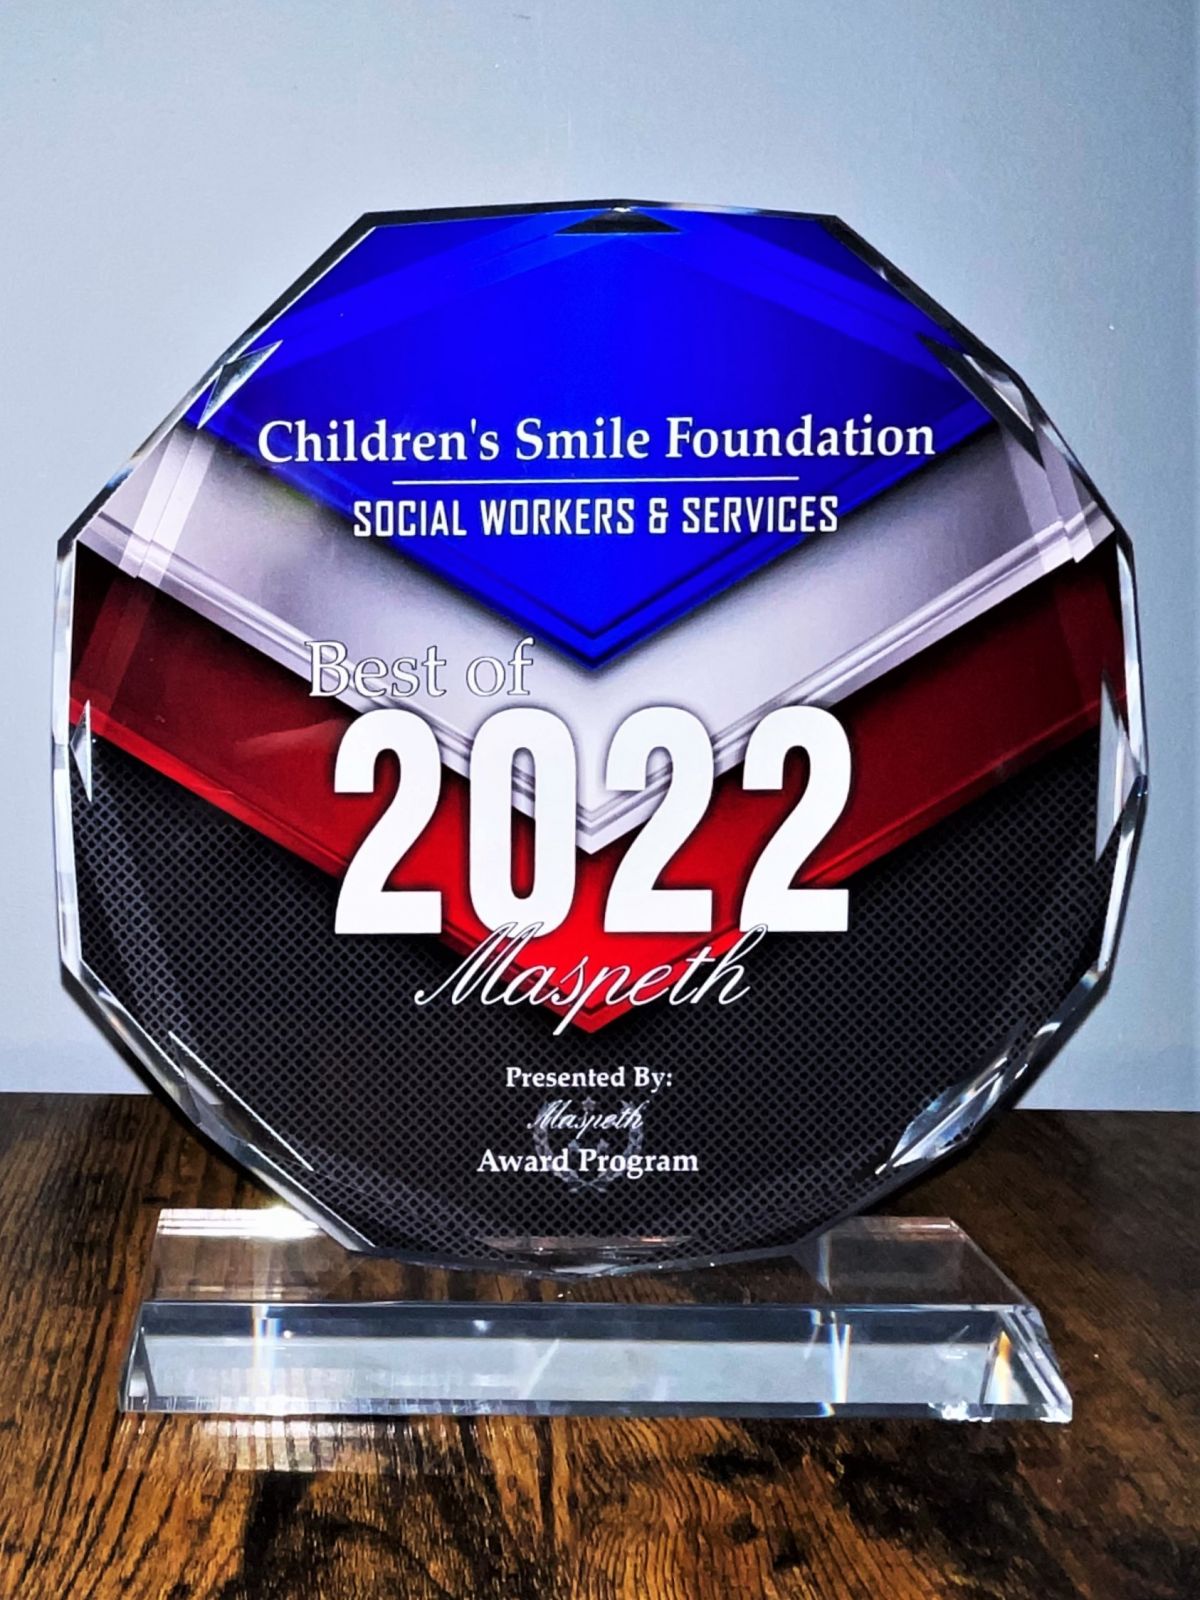 - Children's Smile Foundation otrzymało nagrodę "Best of Maspeth" w kategorii "Social workers & services